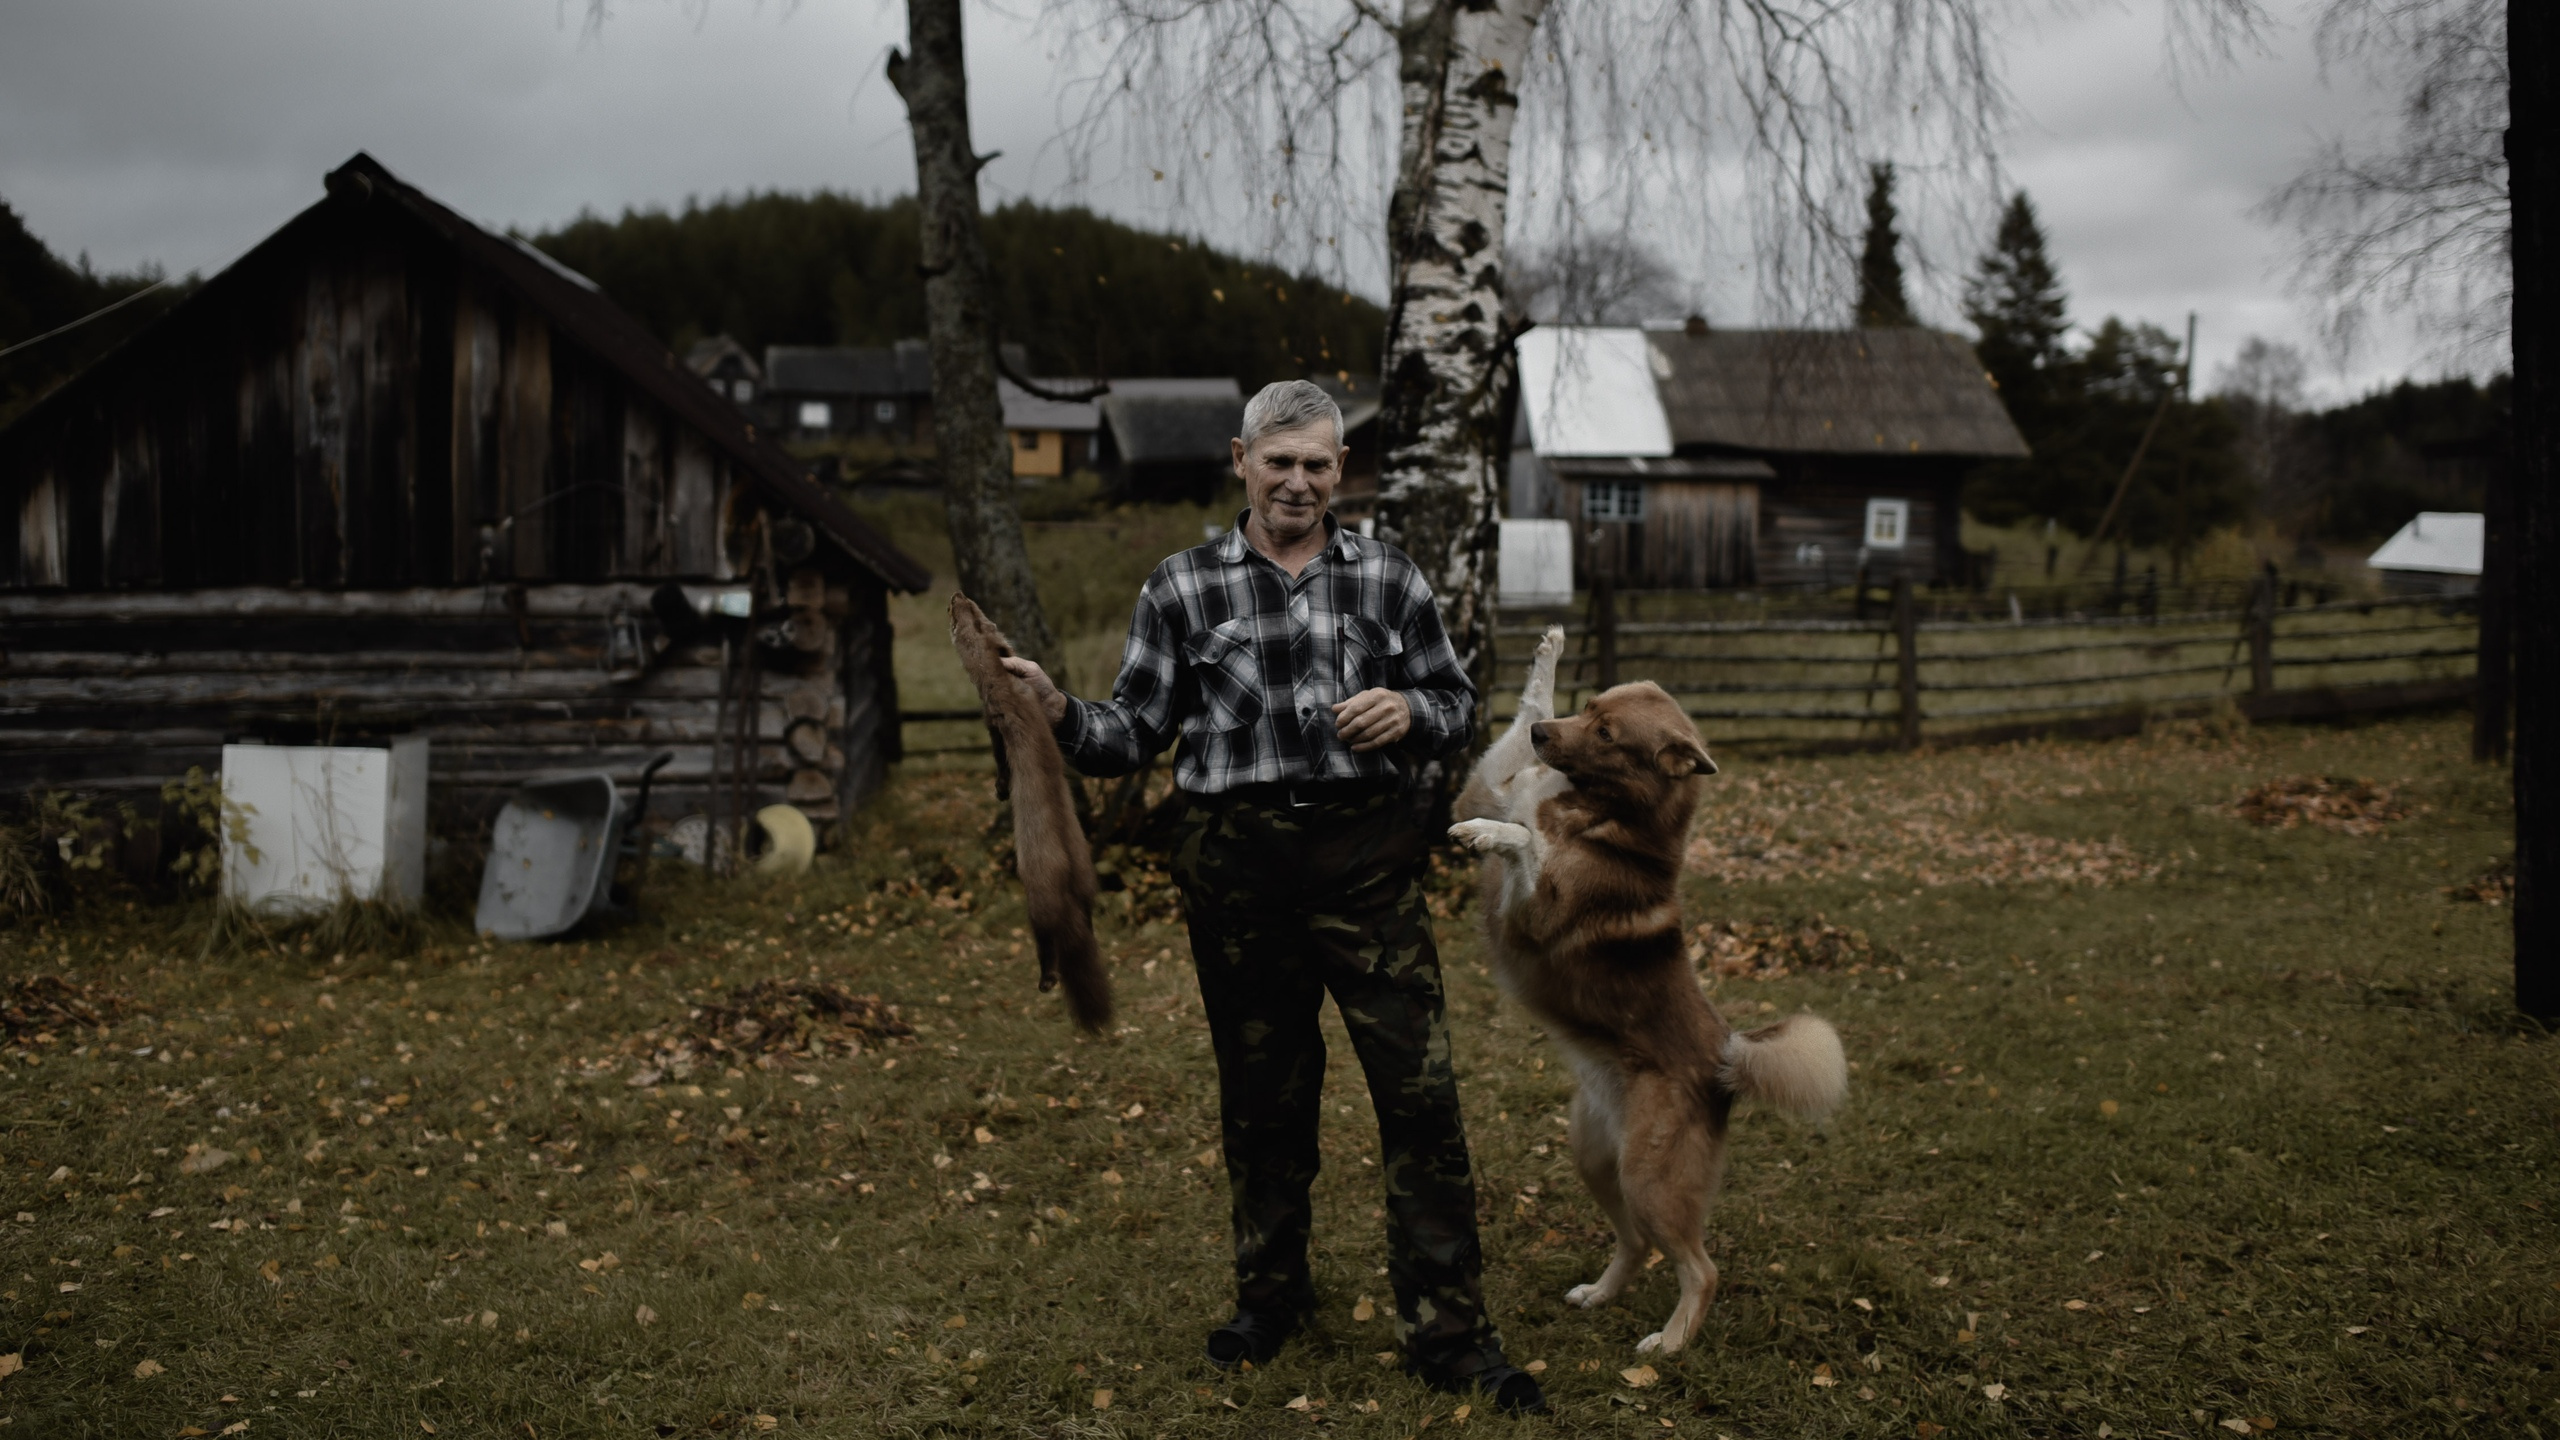 Жители севера России тоже интересны фотохудожнице